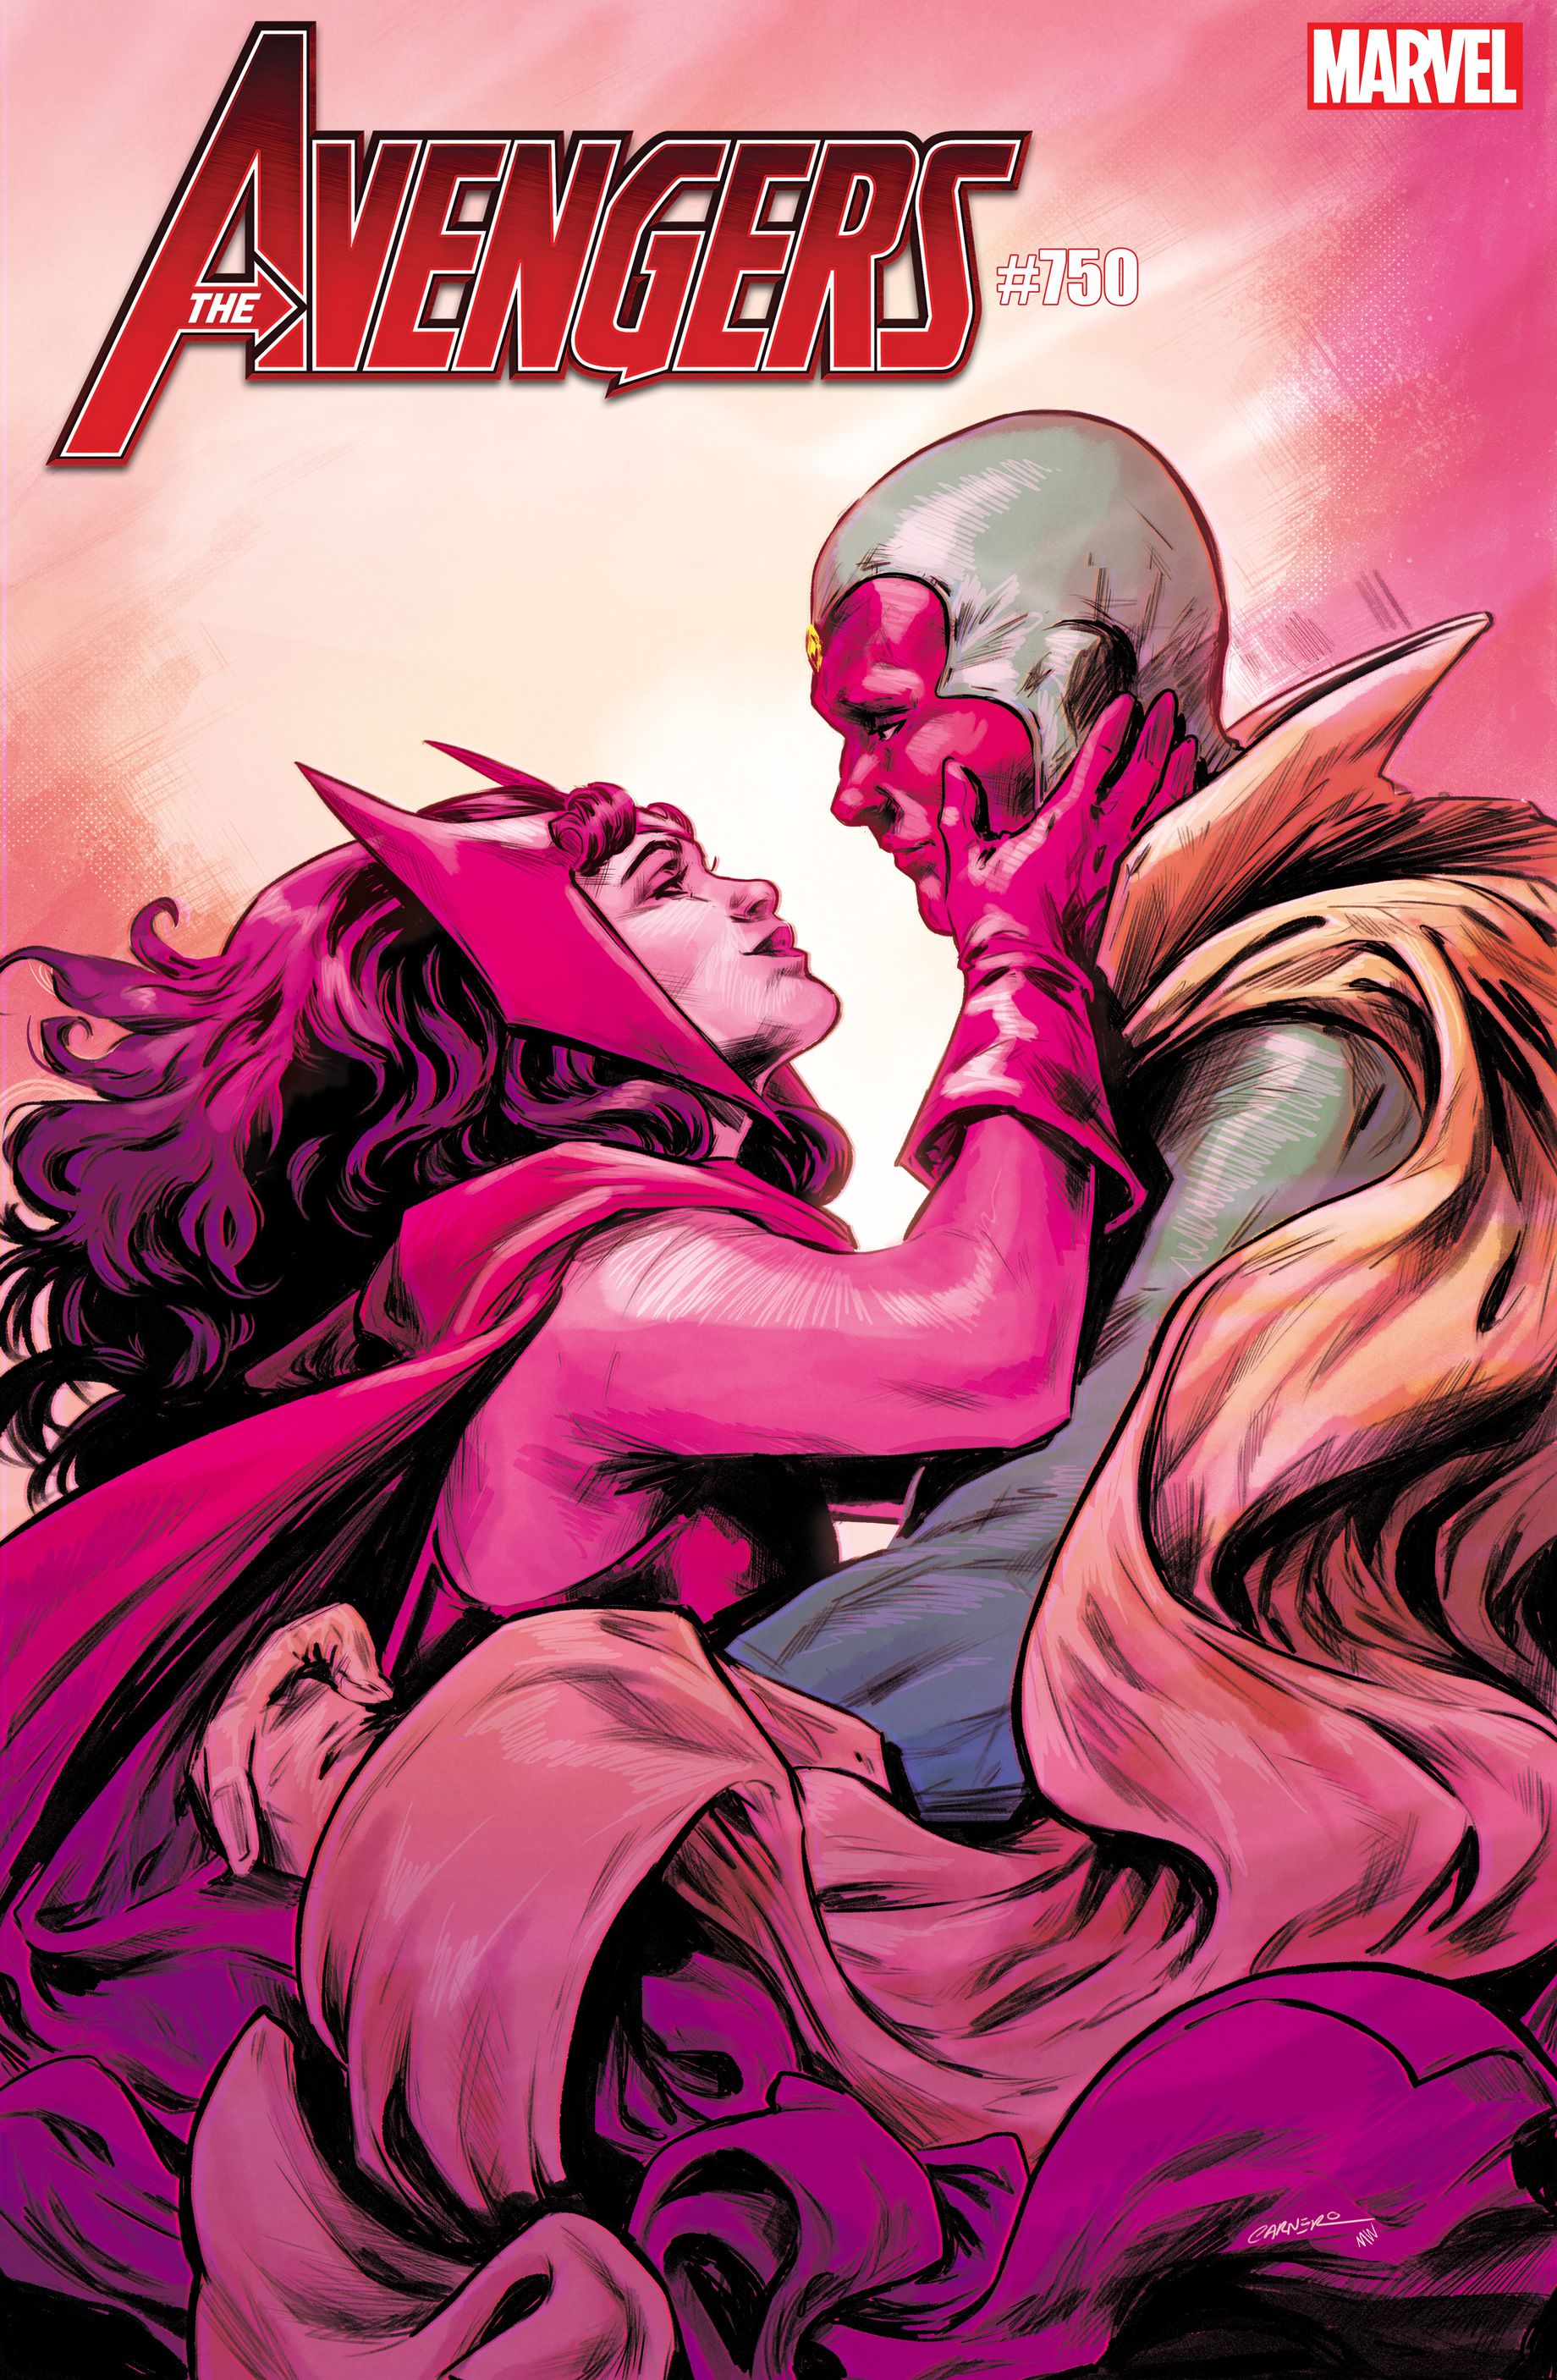 Avengers #750 variant cover